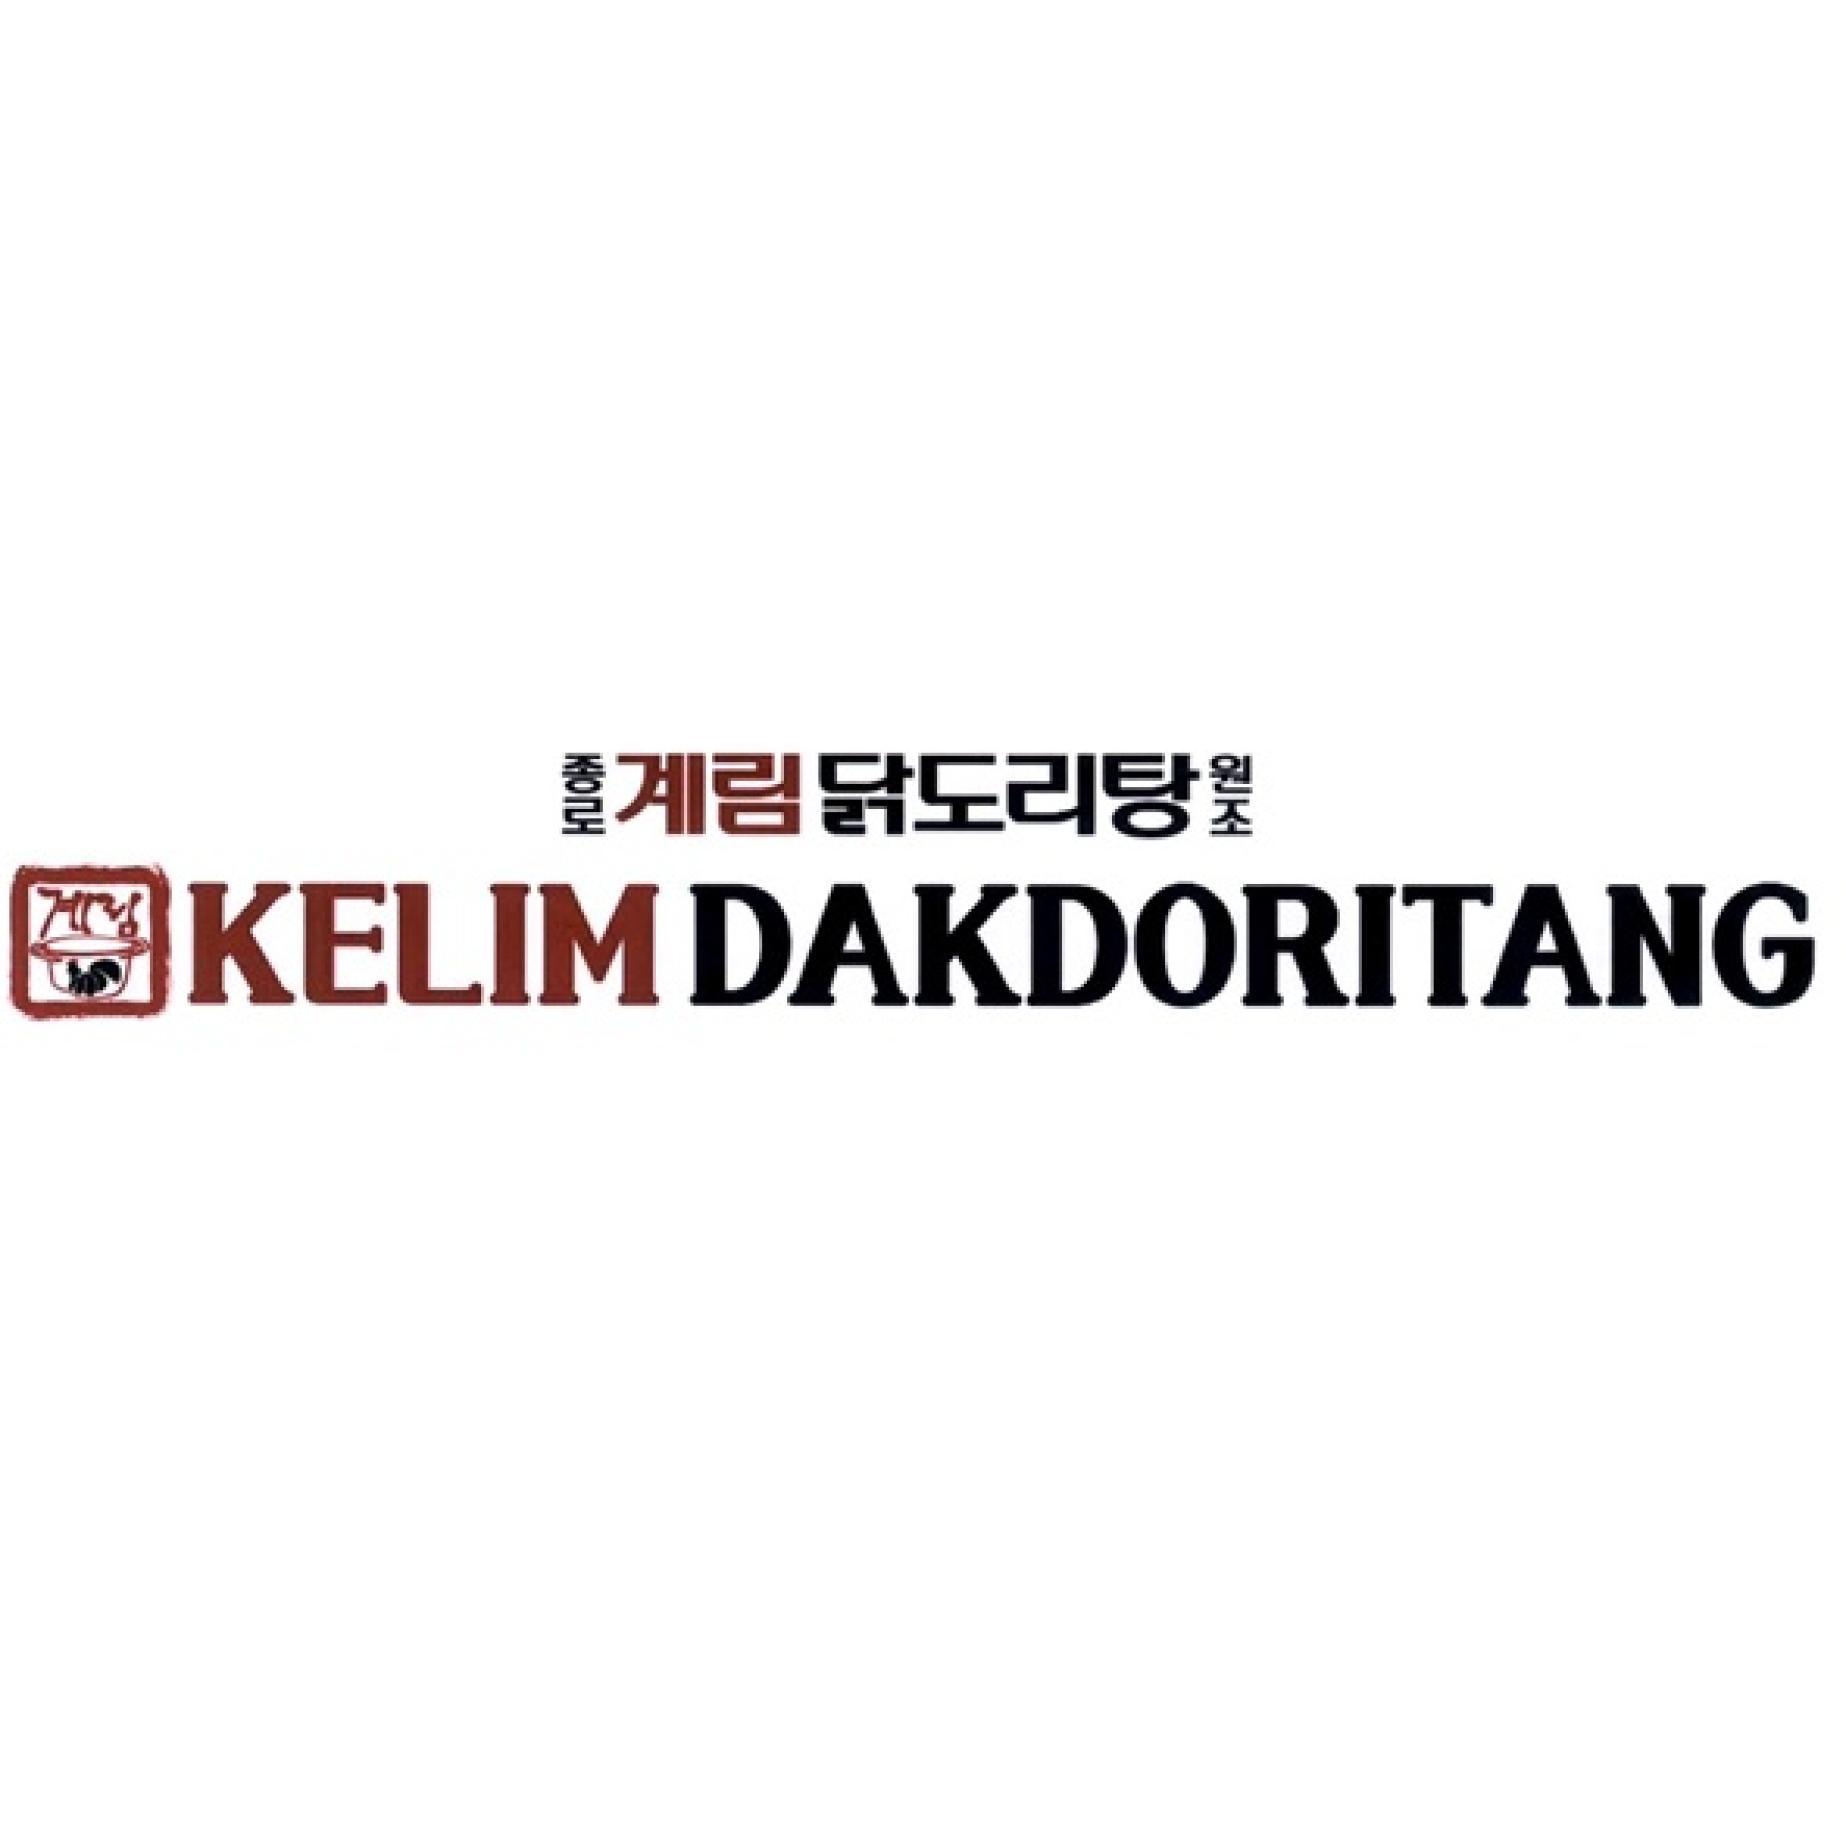 KELIM DAKDORITANG (English & Korean) and device